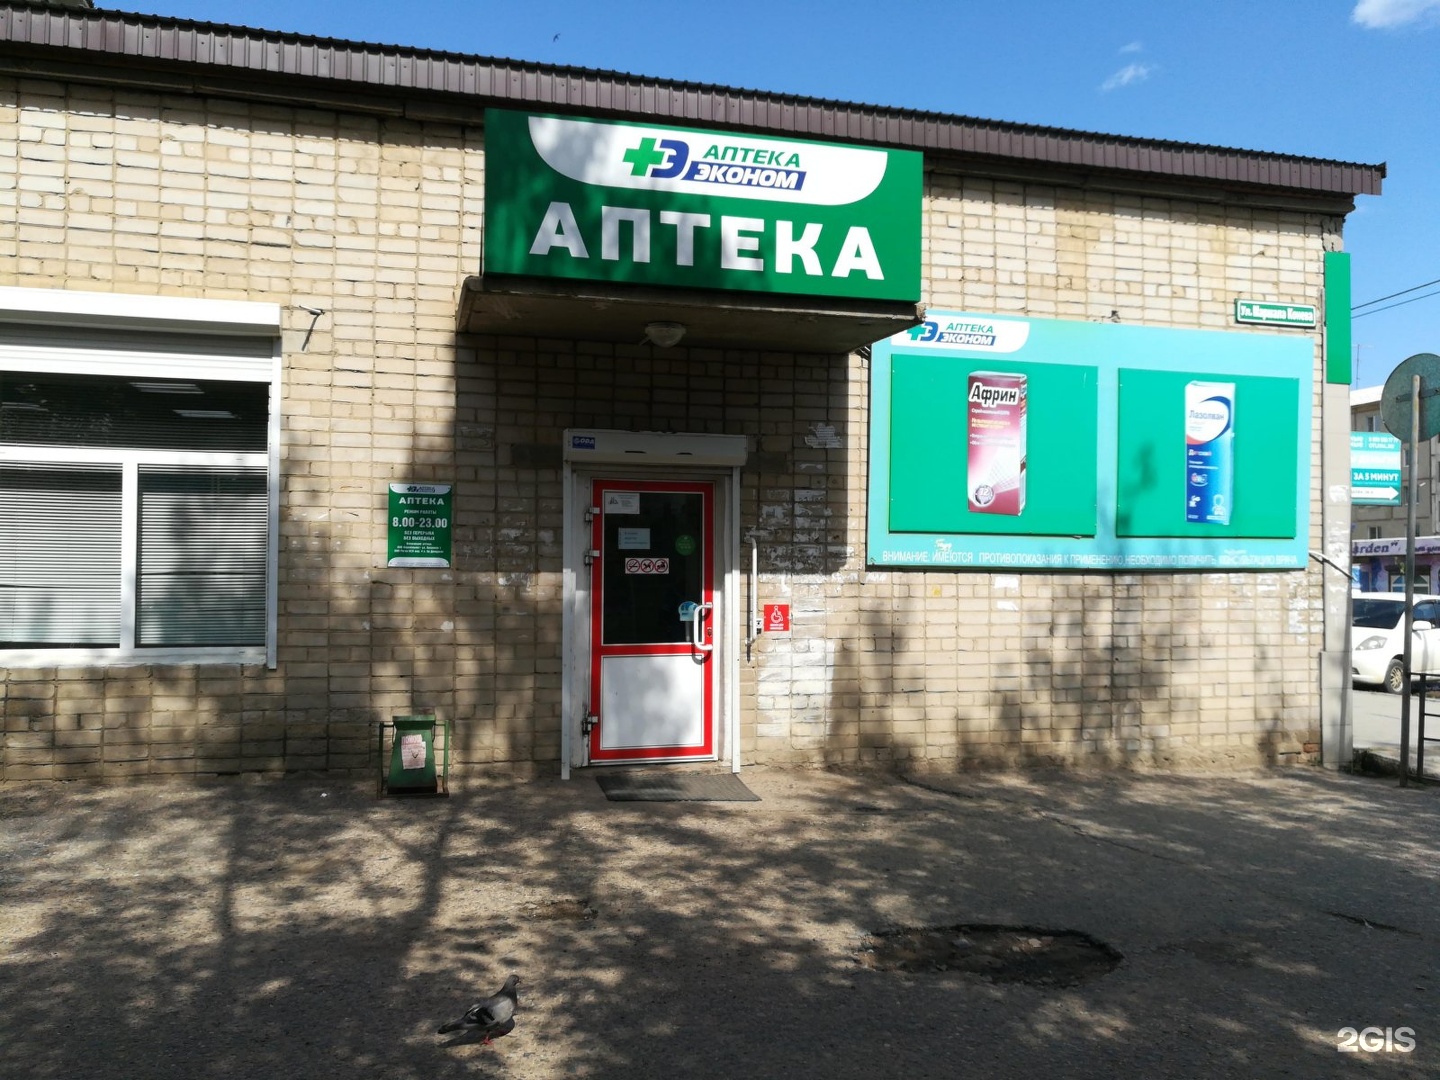 Аптека Эконом Орехово